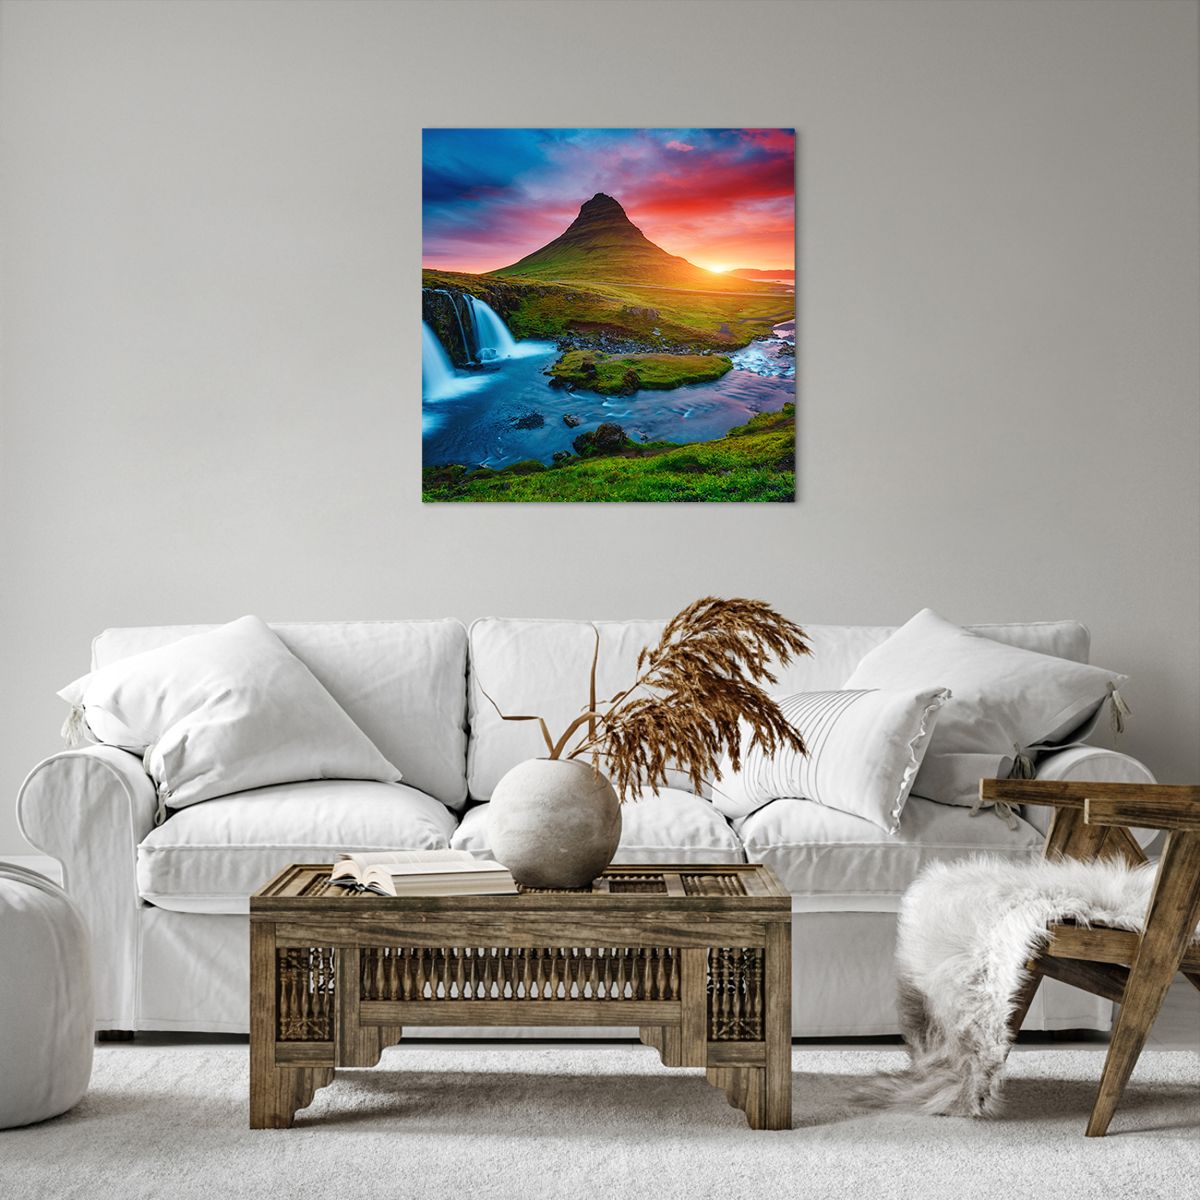 Obrazy na płótnie Krajobraz, Obrazy na płótnie Islandia, Obrazy na płótnie Kirkjufellsfoss, Obrazy na płótnie Wulkan, Obrazy na płótnie Wodospad